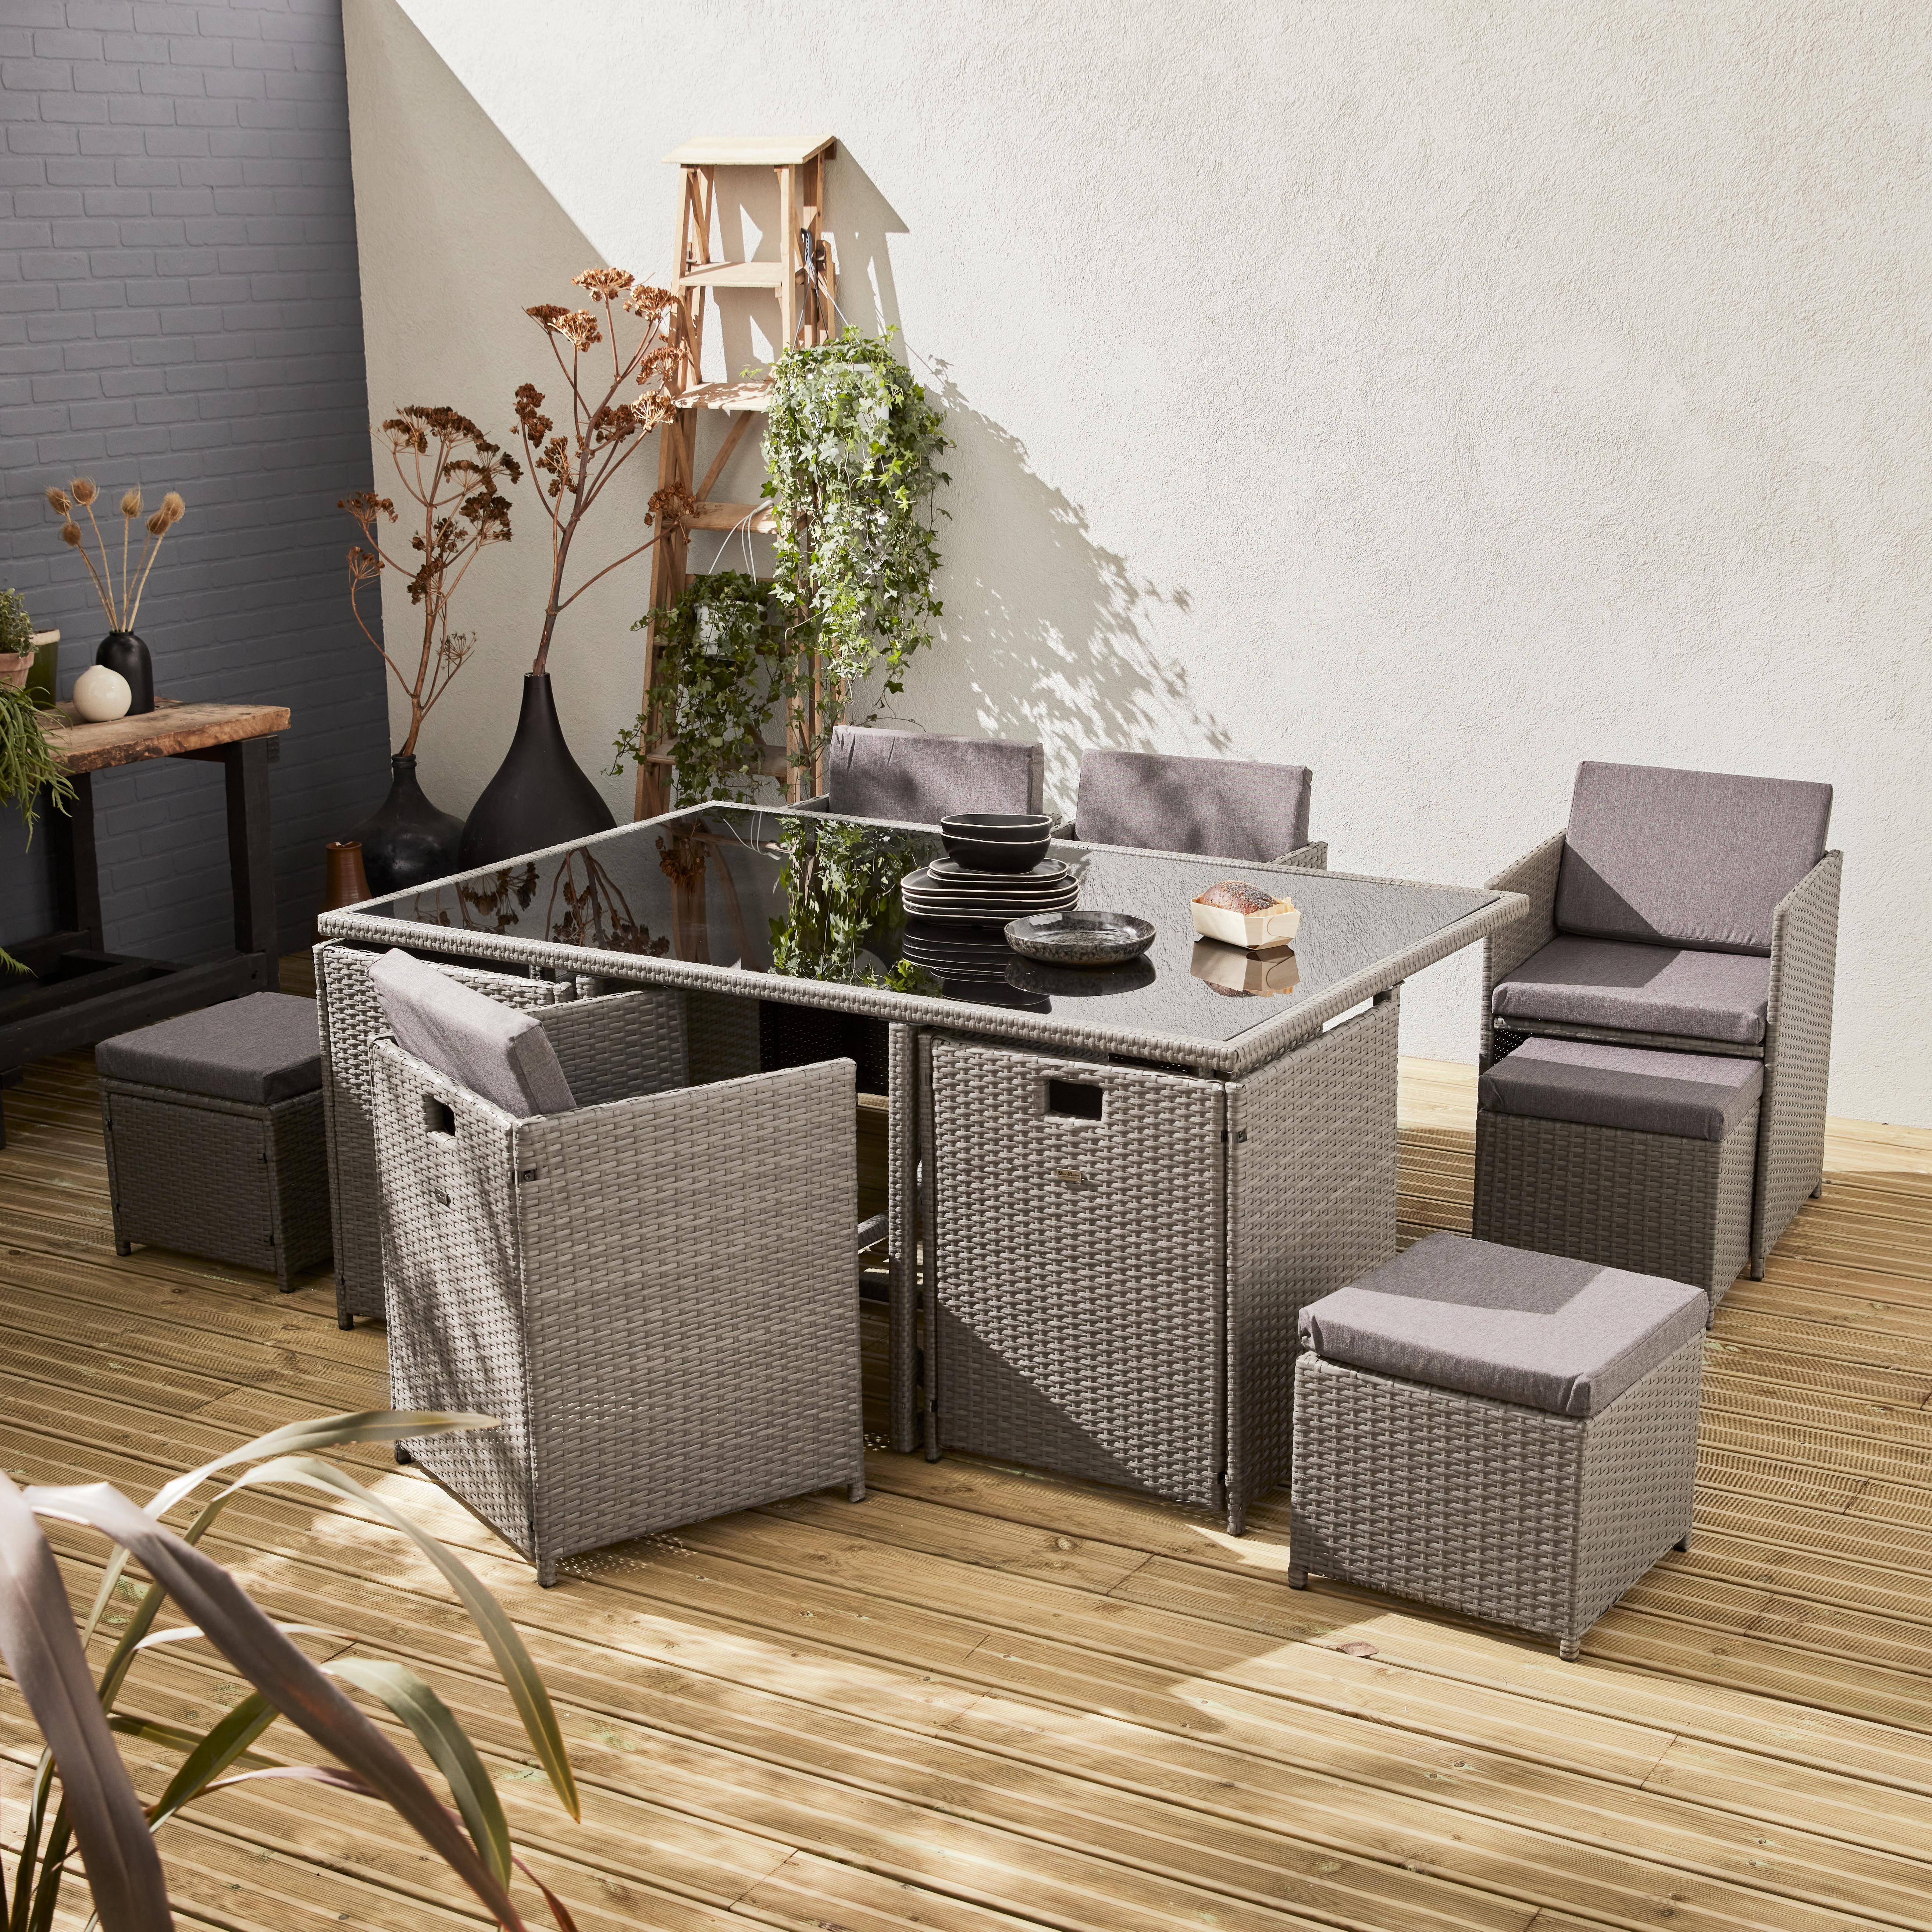 Salon de jardin 6-10 places - Vabo - Coloris Gris, Coussins gris chiné, table encastrable. Photo1